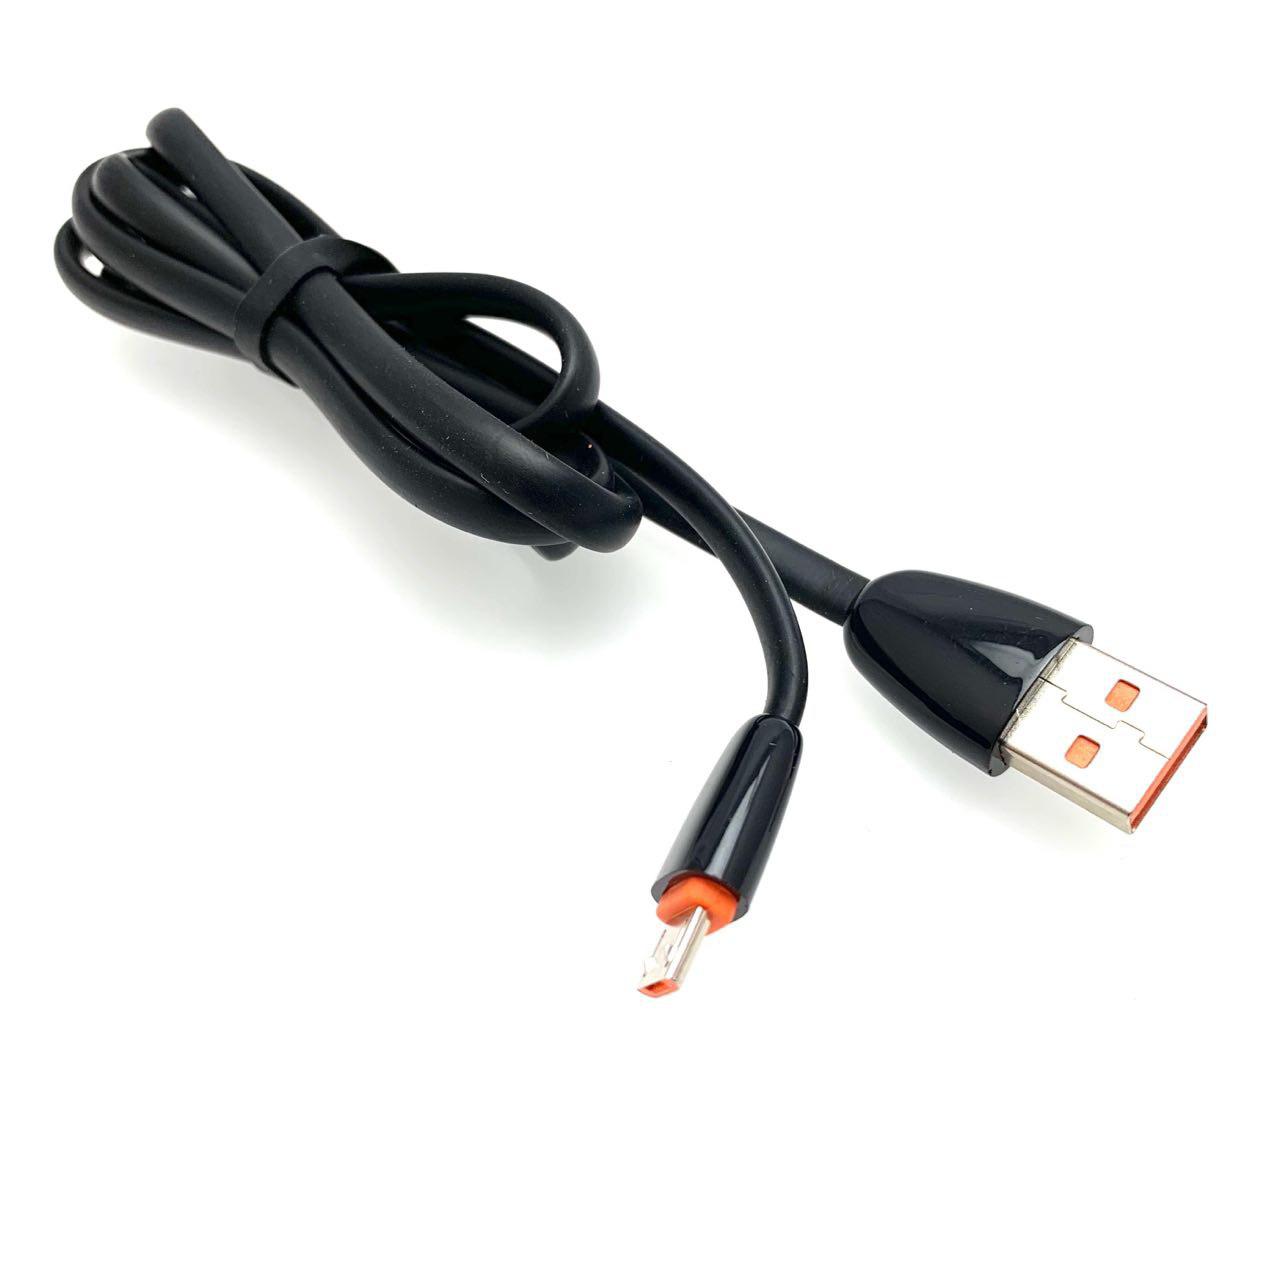 USB Дата-кабель "G01" Micro USB силиконовый эластичный, морозоустойчивый, длина 1 метр, плоский чёрного цвета, оранжевые контакты.